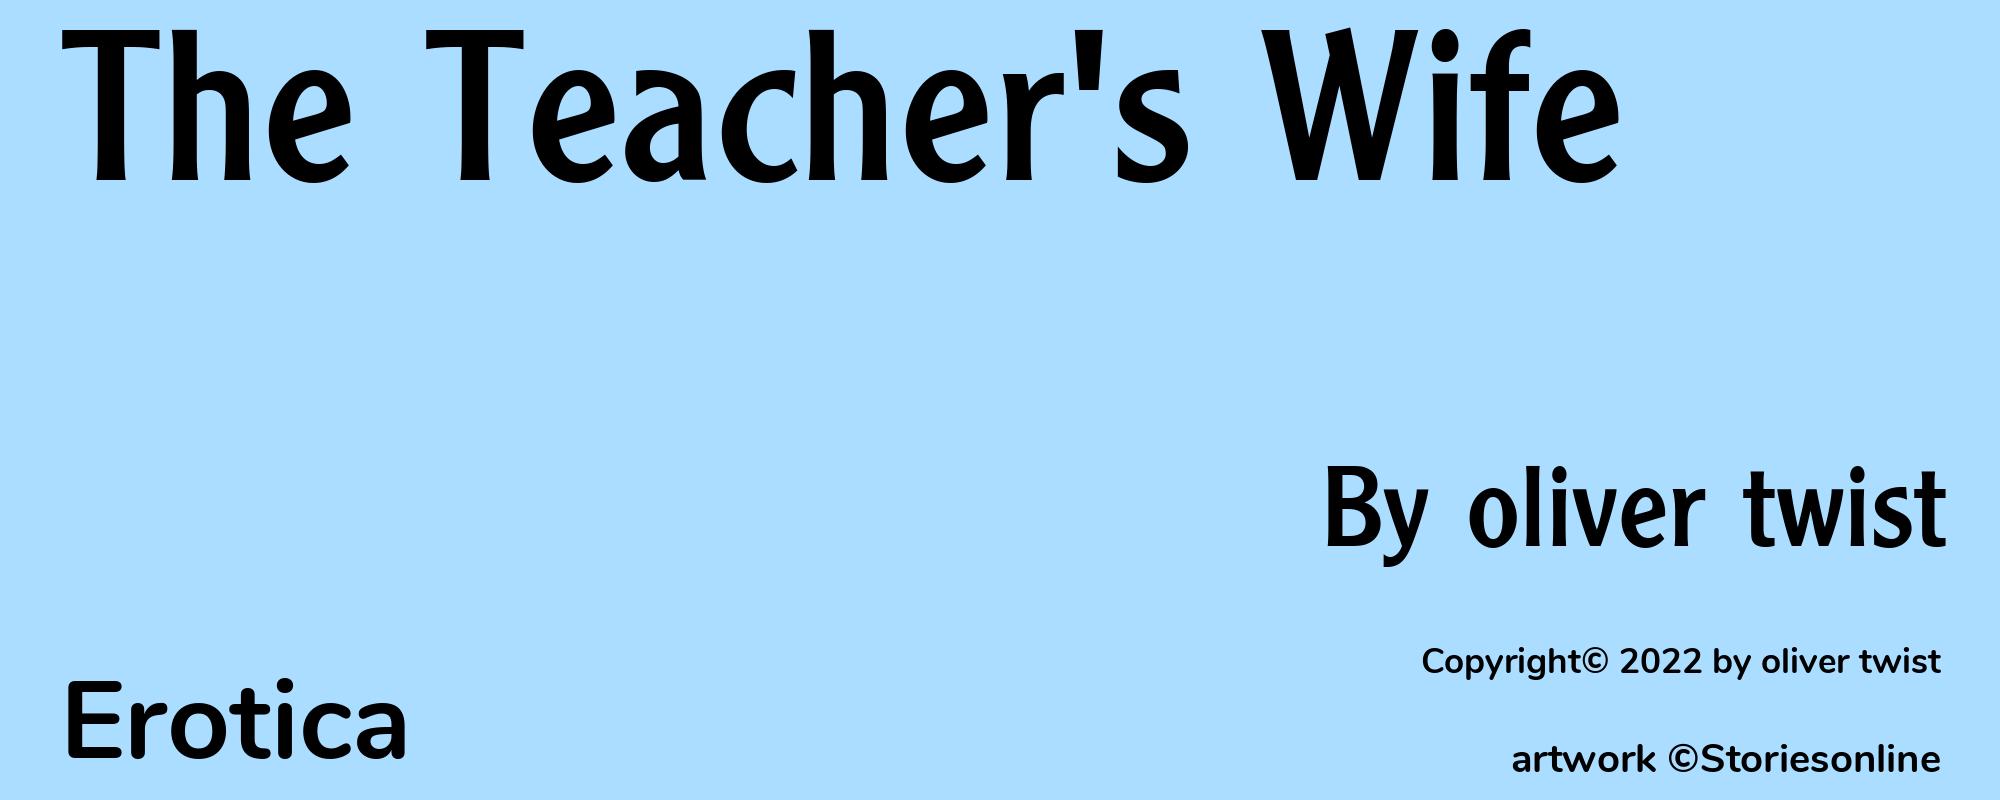 The Teacher's Wife - Cover